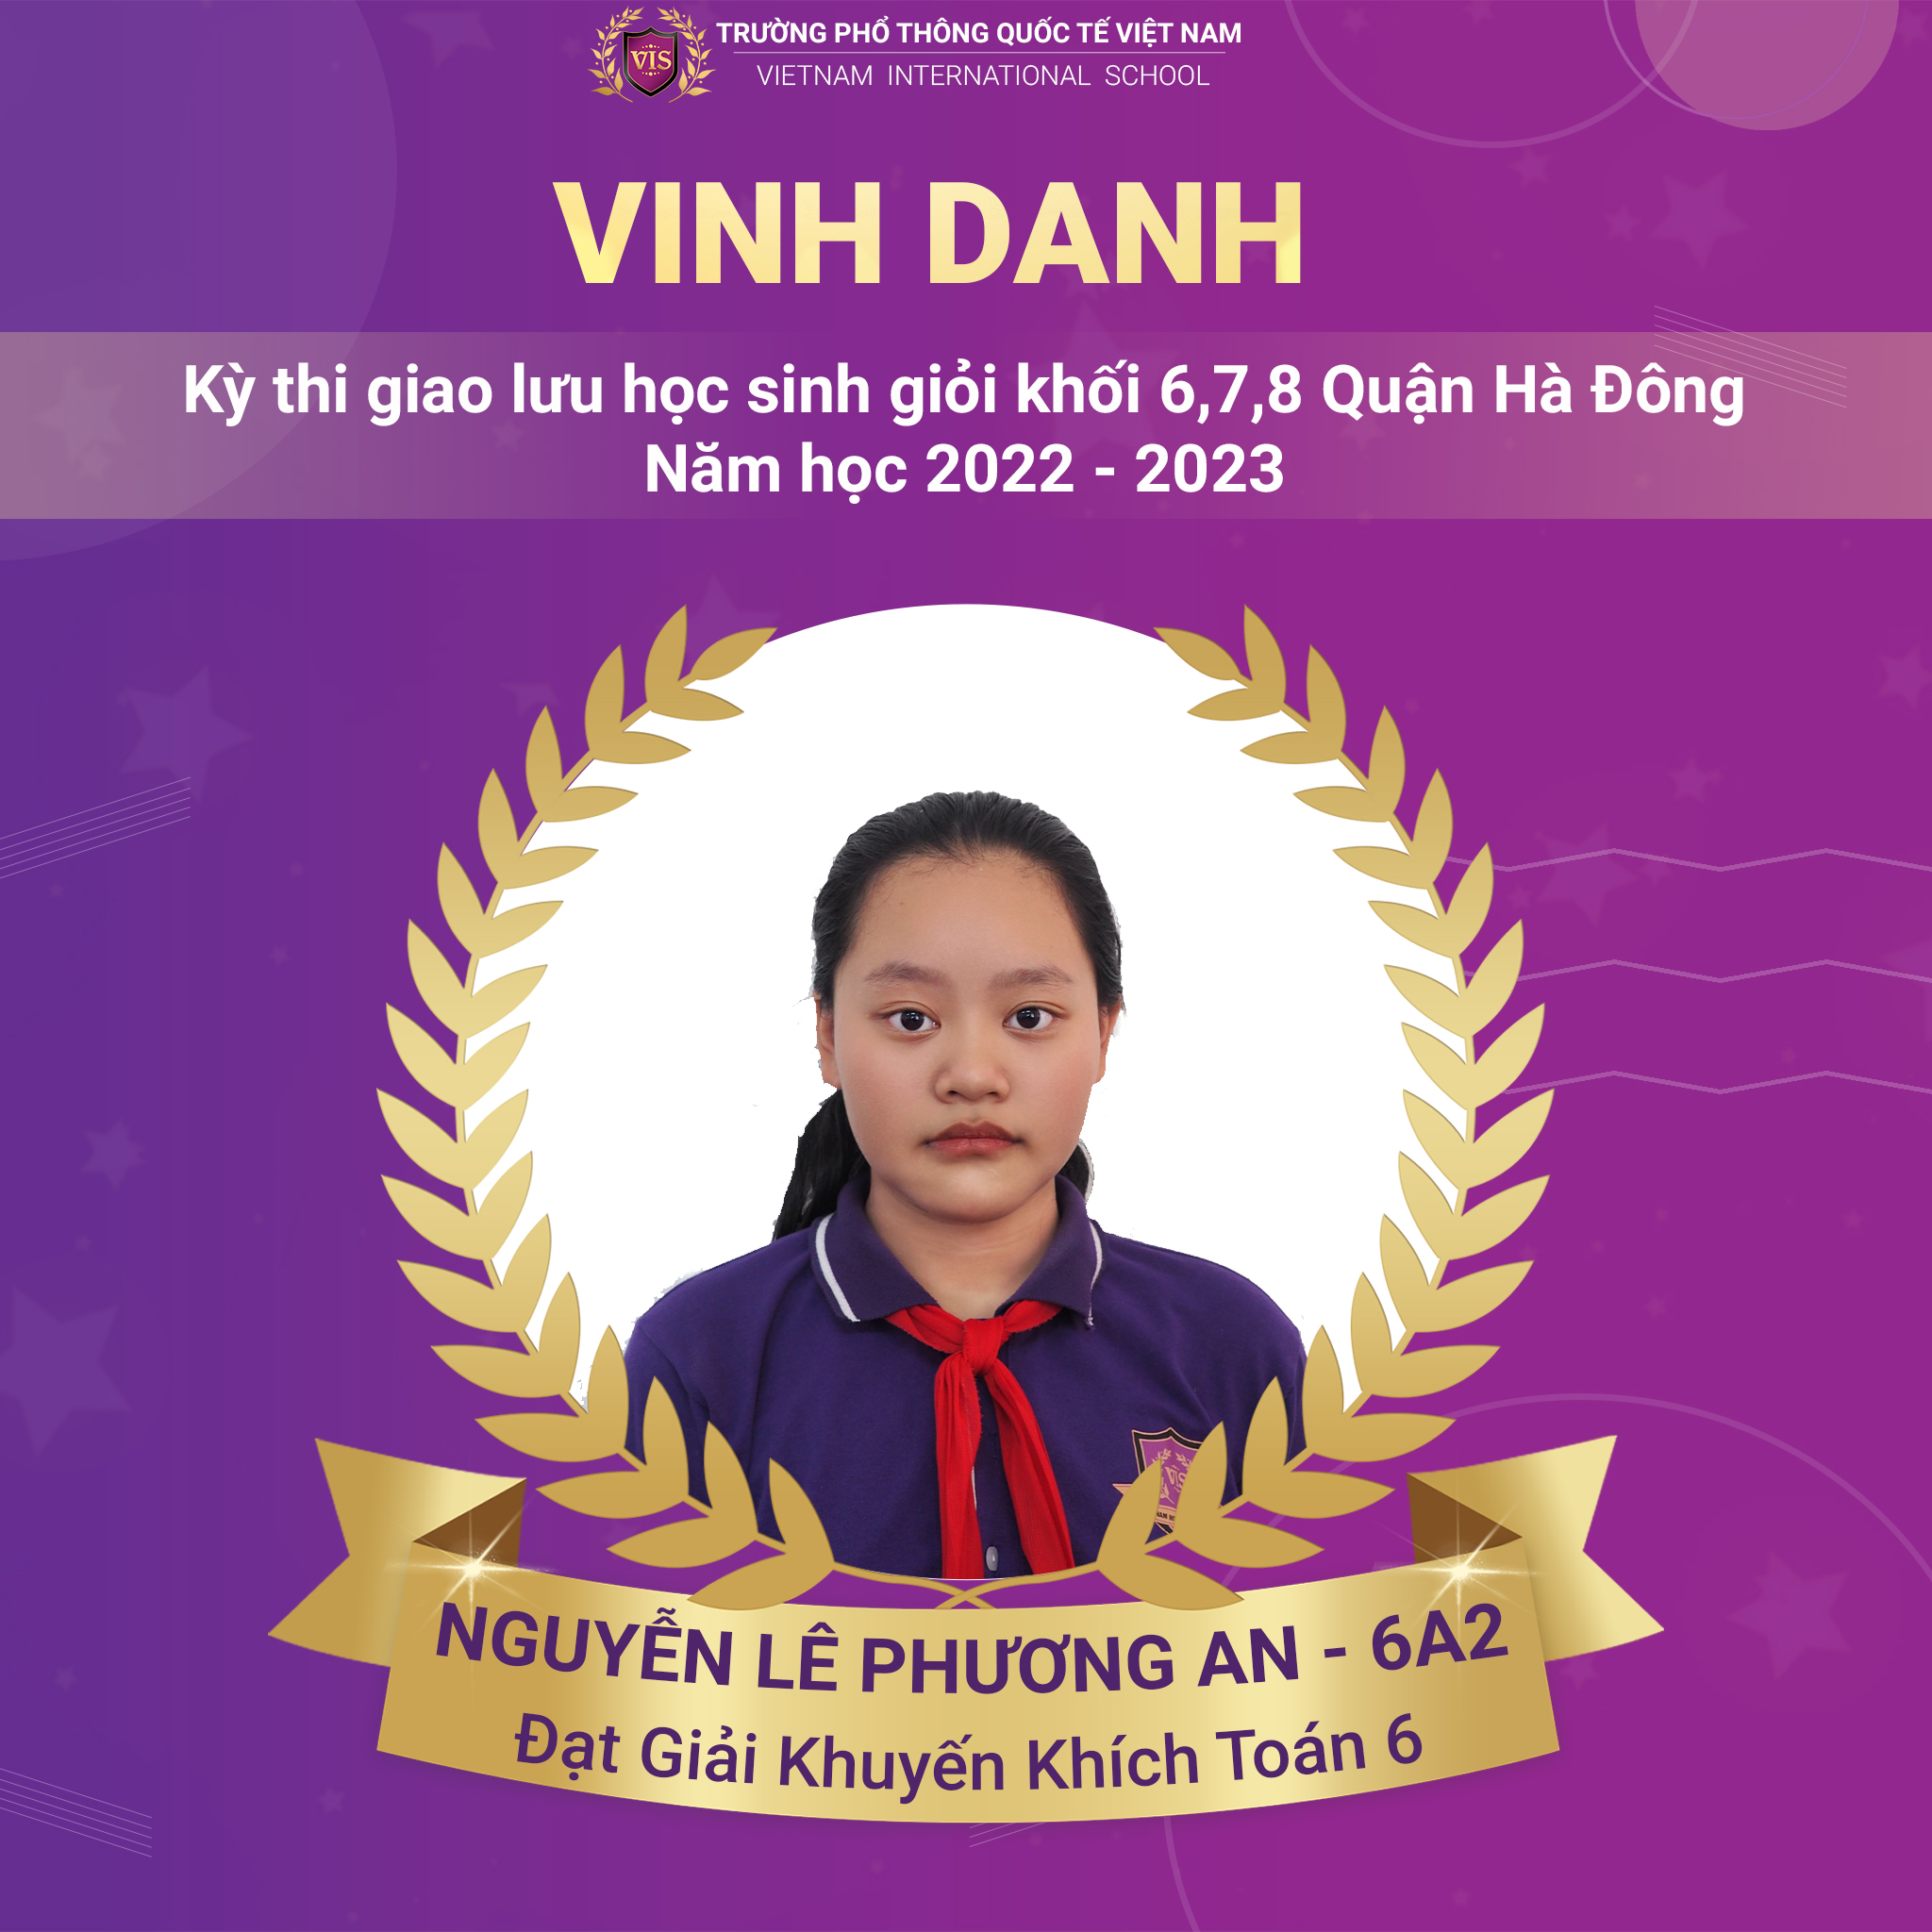 Nguyễn Lê Phương An - Đạt giải trong Kỳ thi Giao lưu HSG cấp Quận